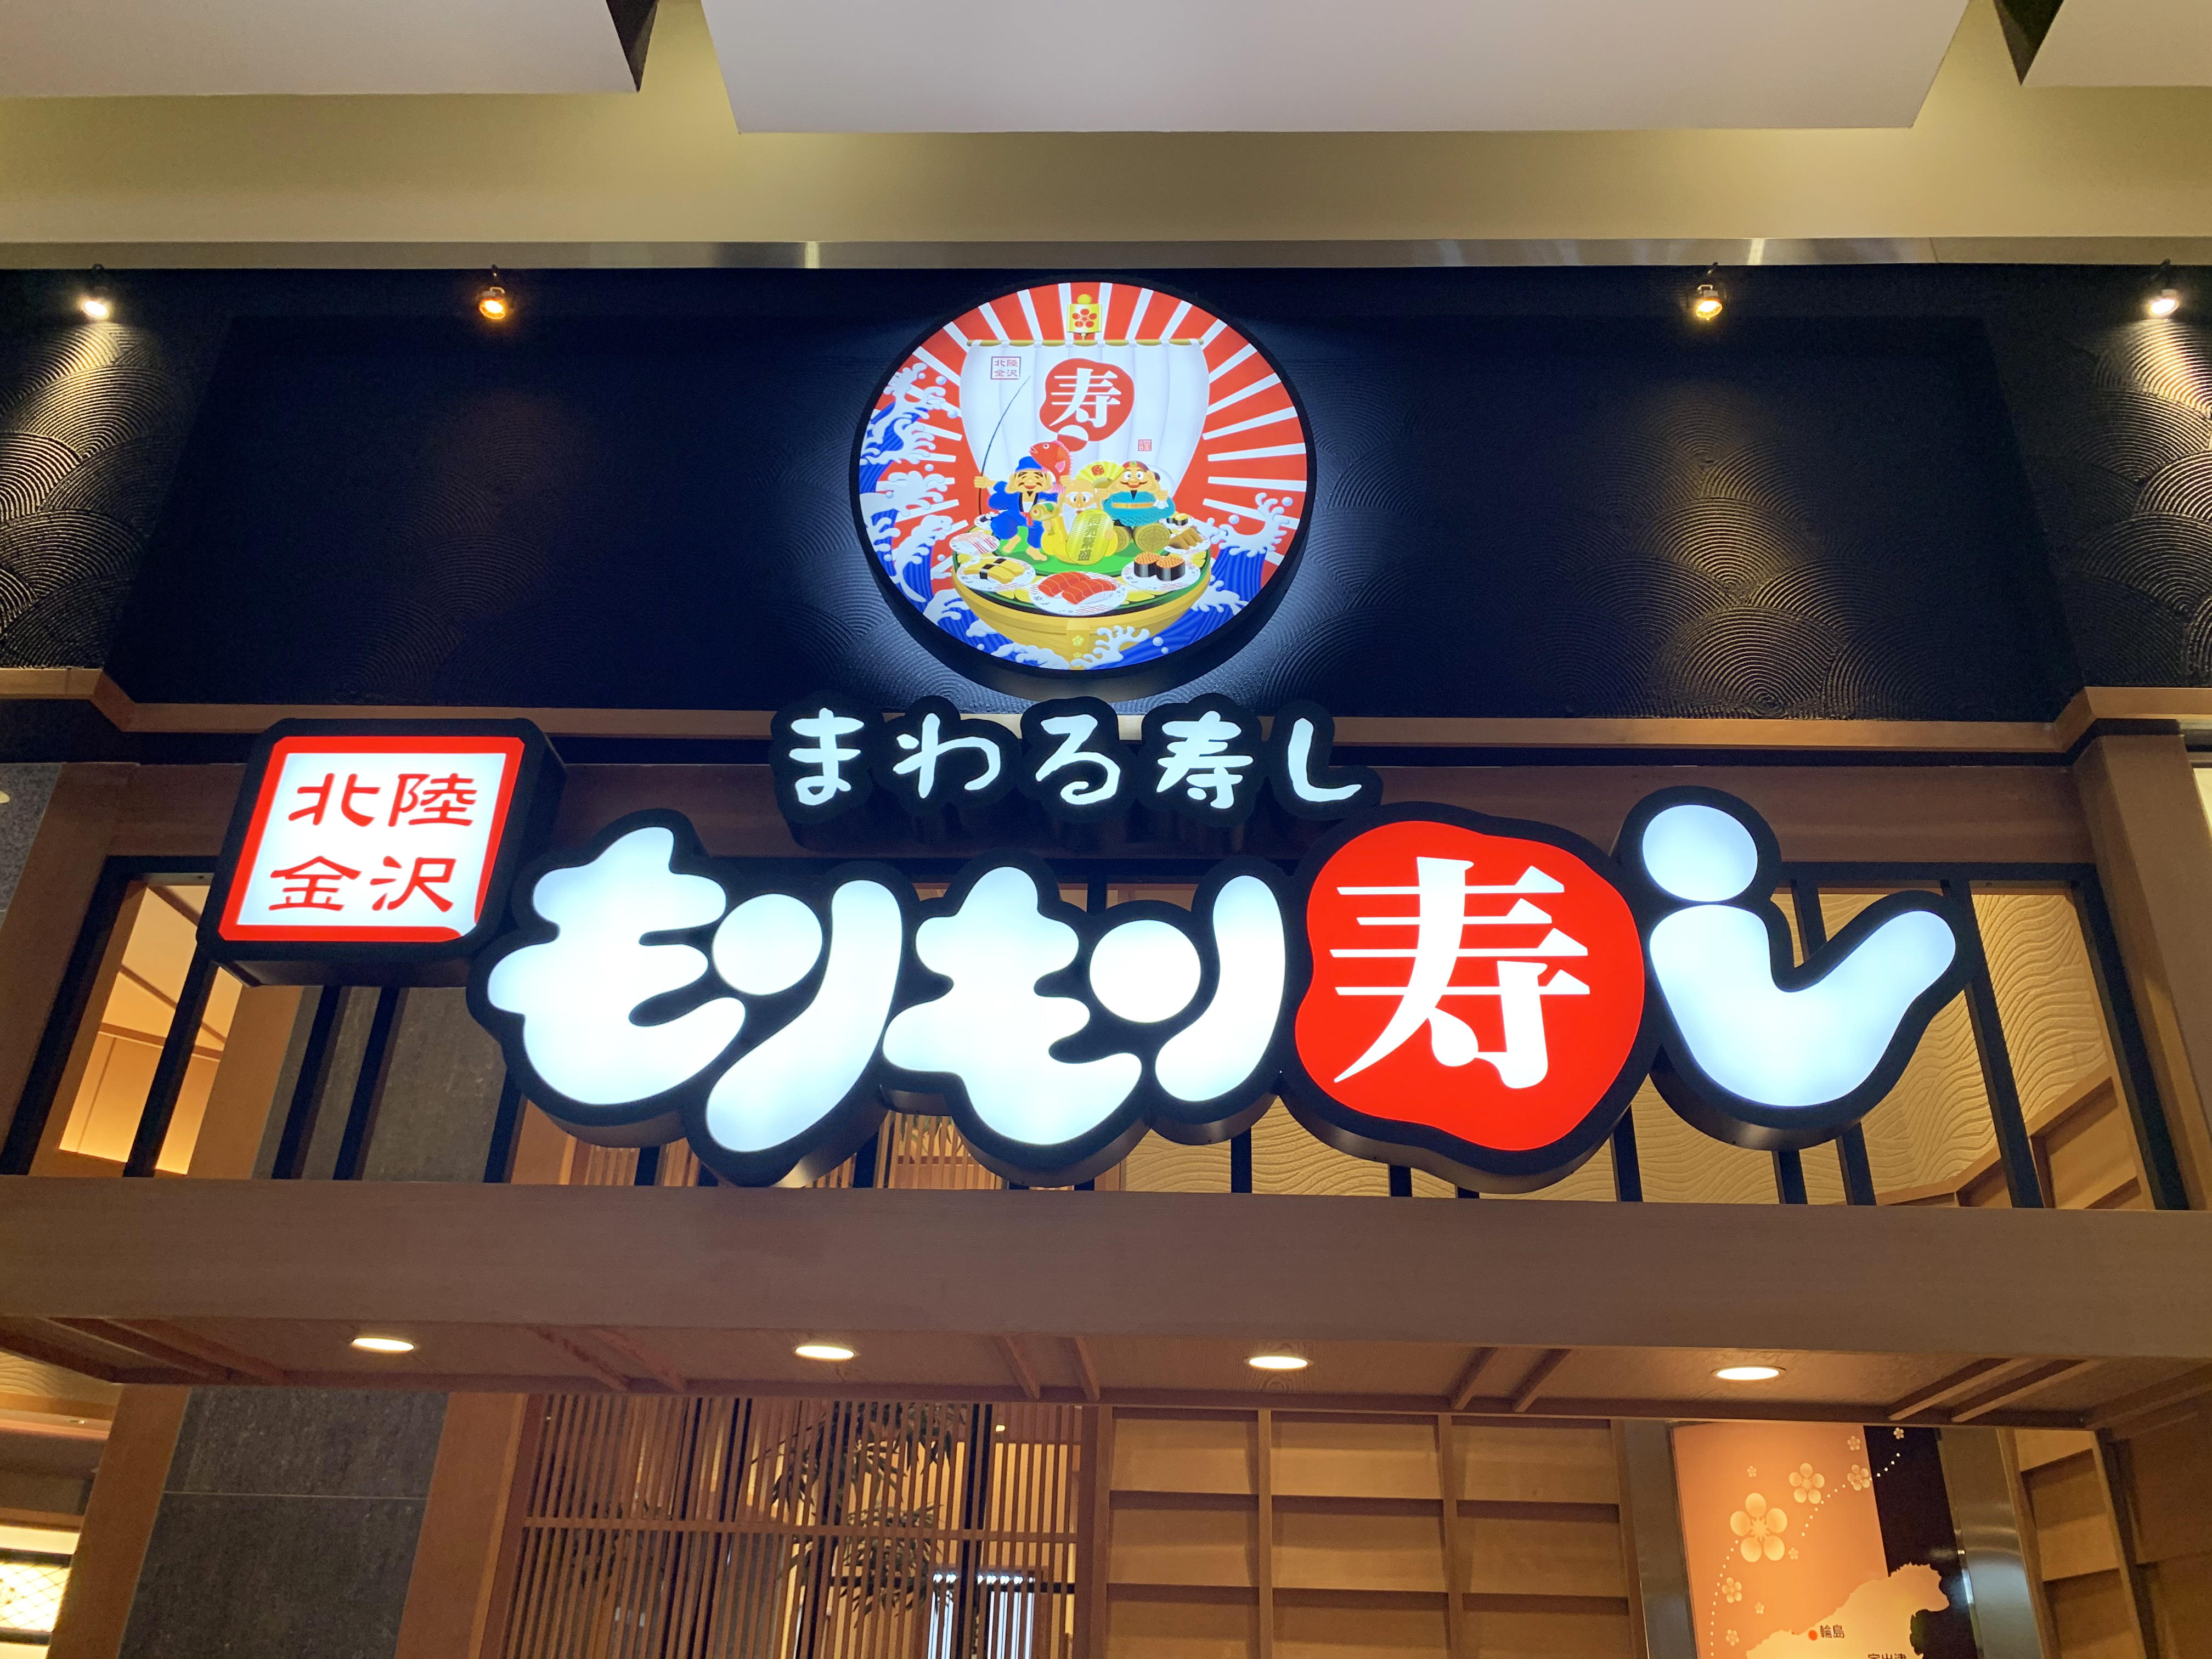 朗報 海鮮王国 石川県で行列のできる回転寿司 もりもり寿し が激ウマだった ちなみに東京にもあるぞー ロケットニュース24